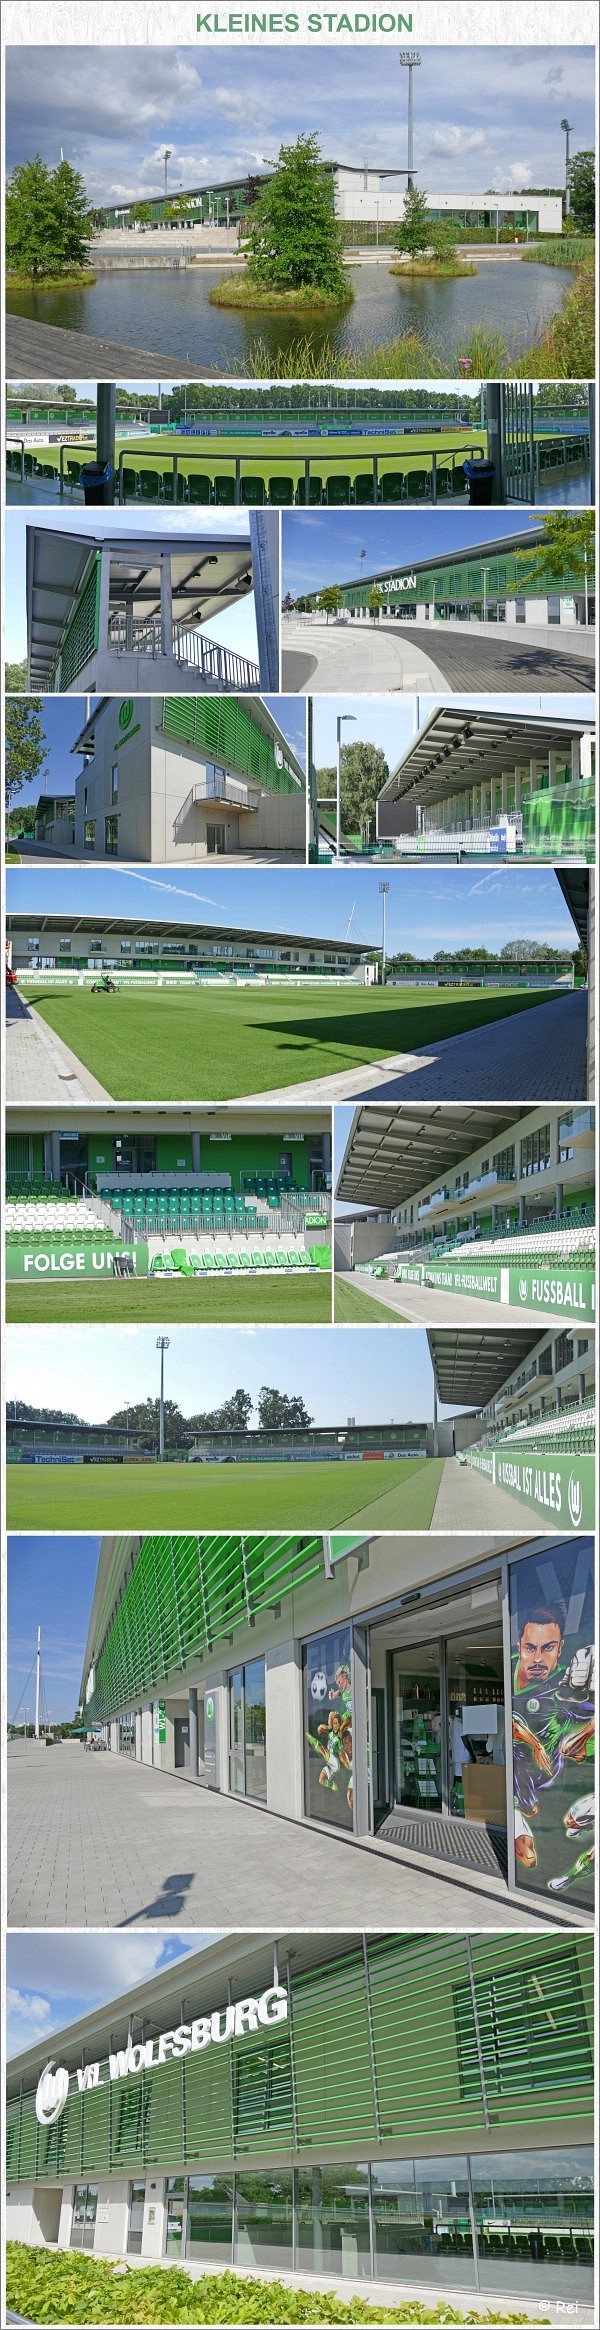 KLEINES STADION - VfL Wolfsburg